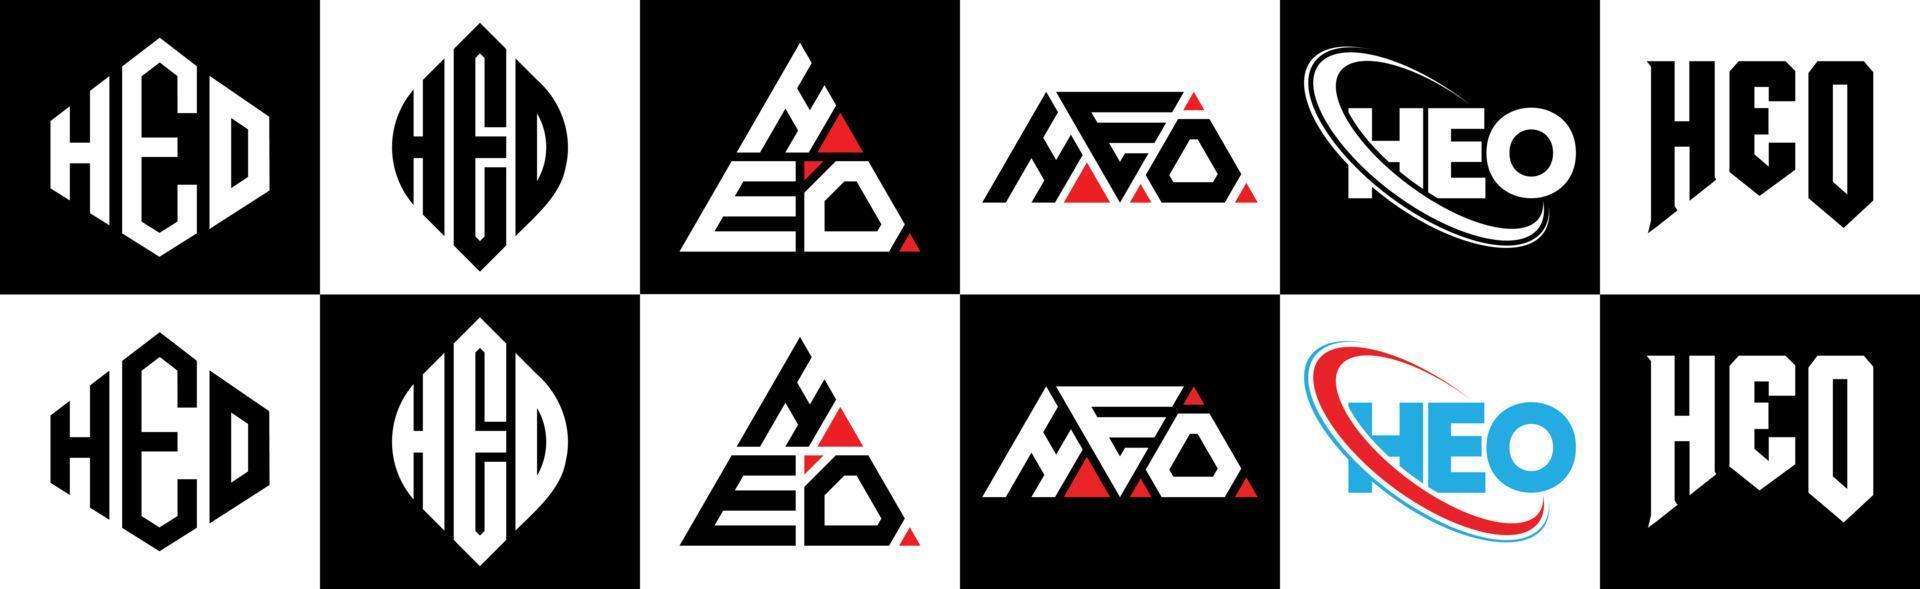 Heo-Buchstaben-Logo-Design in sechs Stilen. heo polygon, kreis, dreieck, sechseck, flacher und einfacher stil mit schwarz-weißem buchstabenlogo in einer zeichenfläche. heo minimalistisches und klassisches logo vektor